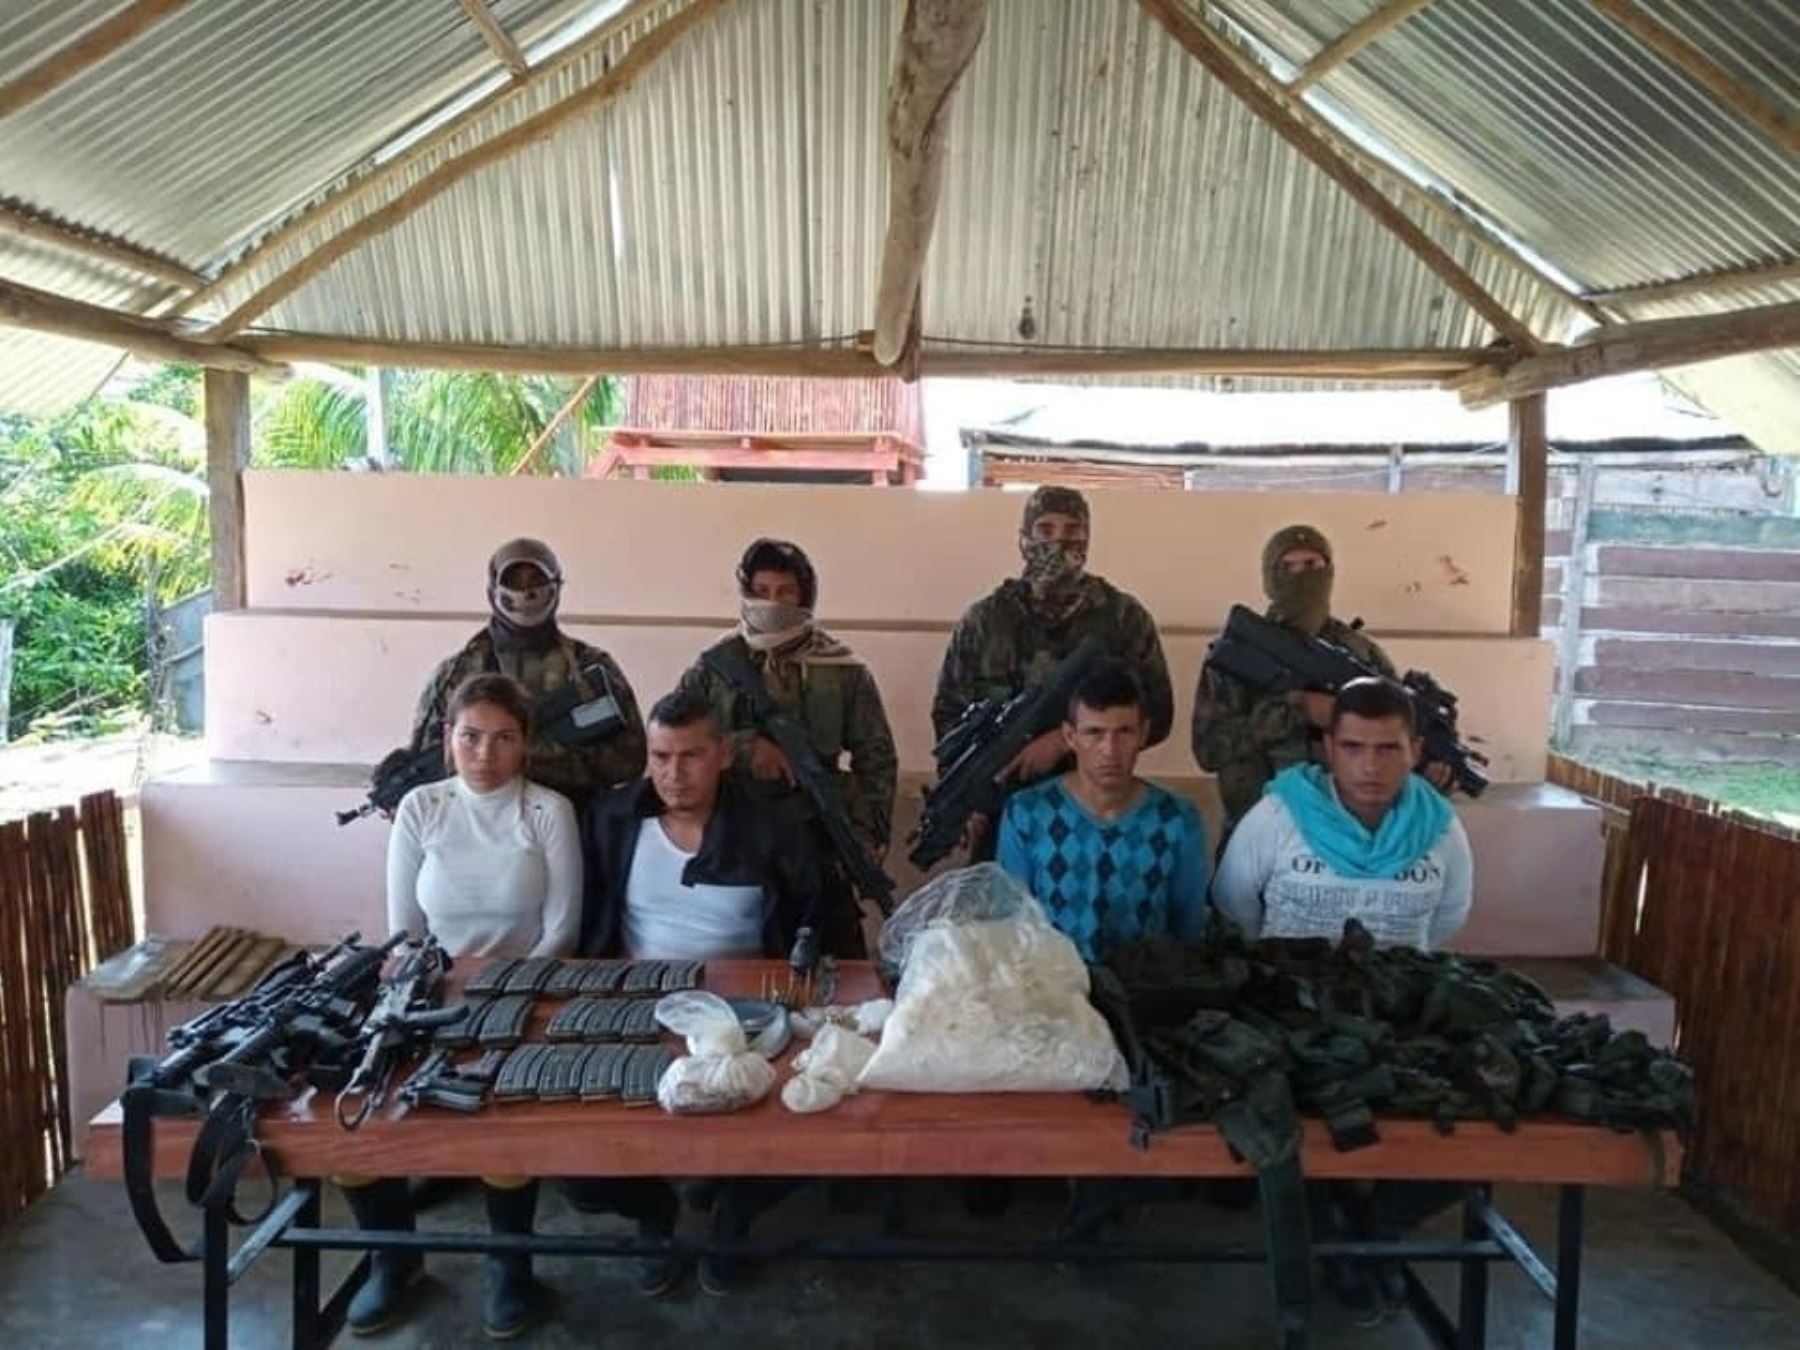 La Corte Superior de Justicia de Loreto condenó a 25 años de cárcel a tres ciudadanos colombianos por los delitos de tráfico ilícito de drogas y tenencia ilegal de armas.